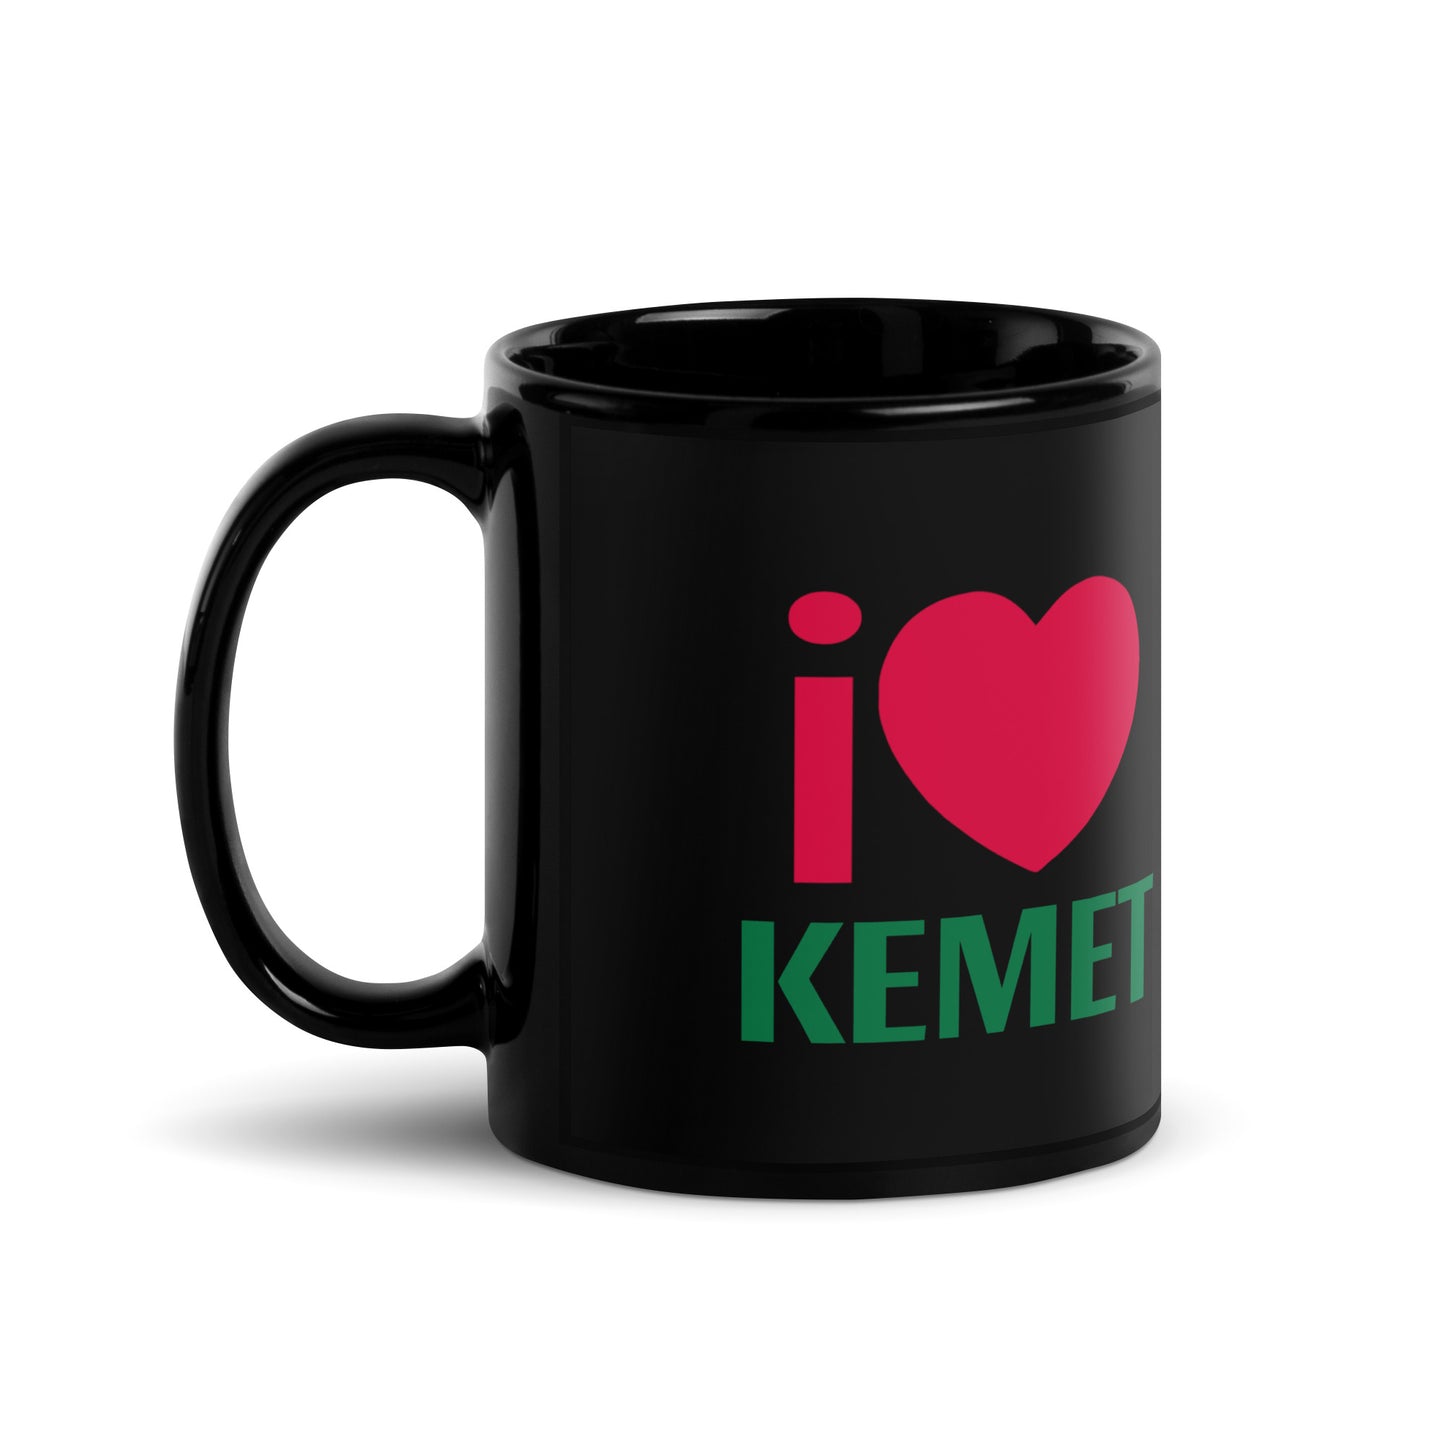 I LOVE KEMET Black Glossy Mug